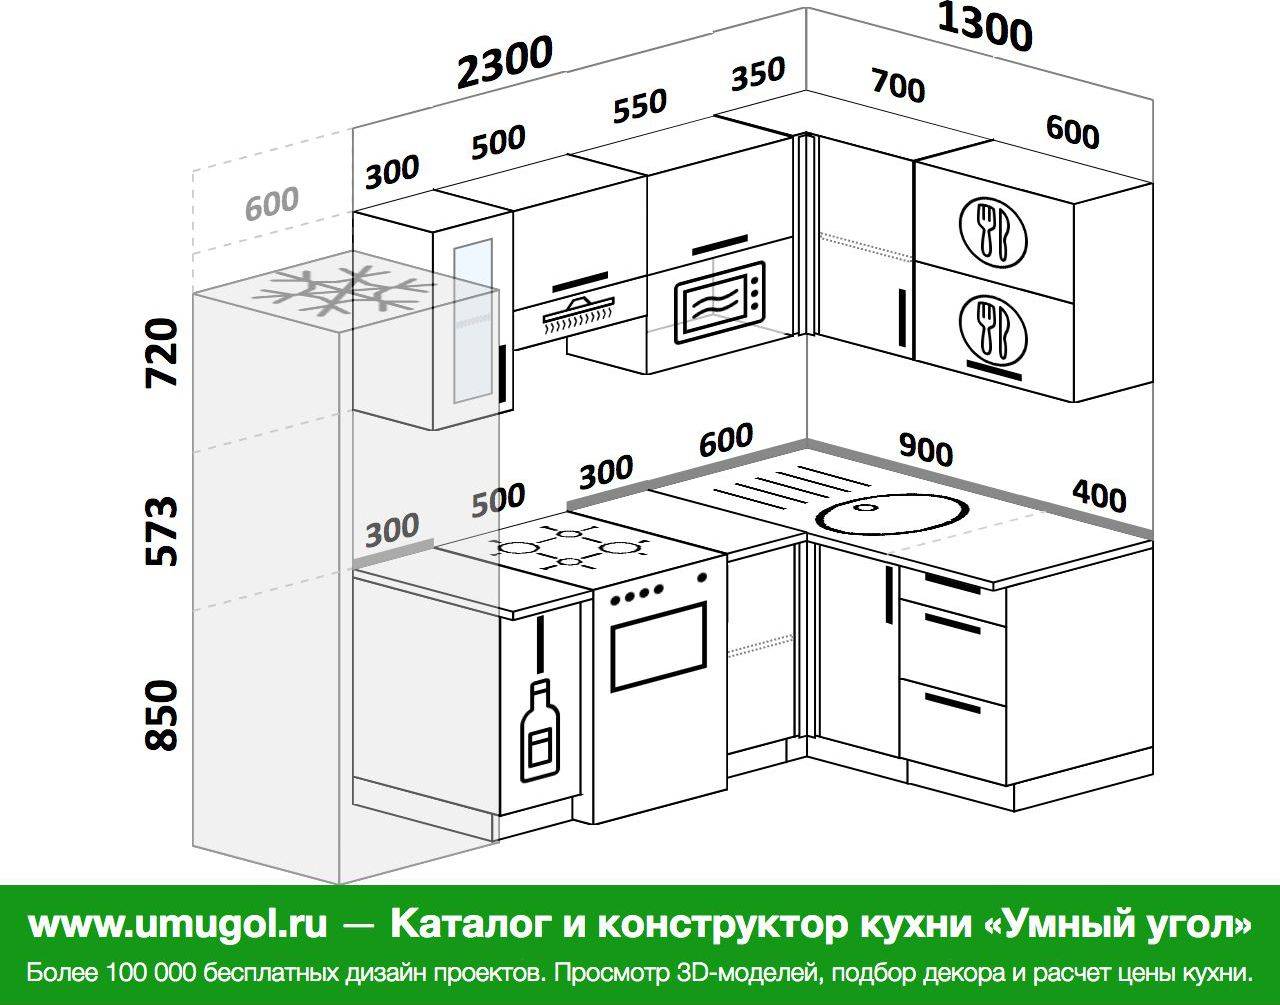 Что такое модульная кухня - варианты планировок
что такое модульная кухня - варианты планировок